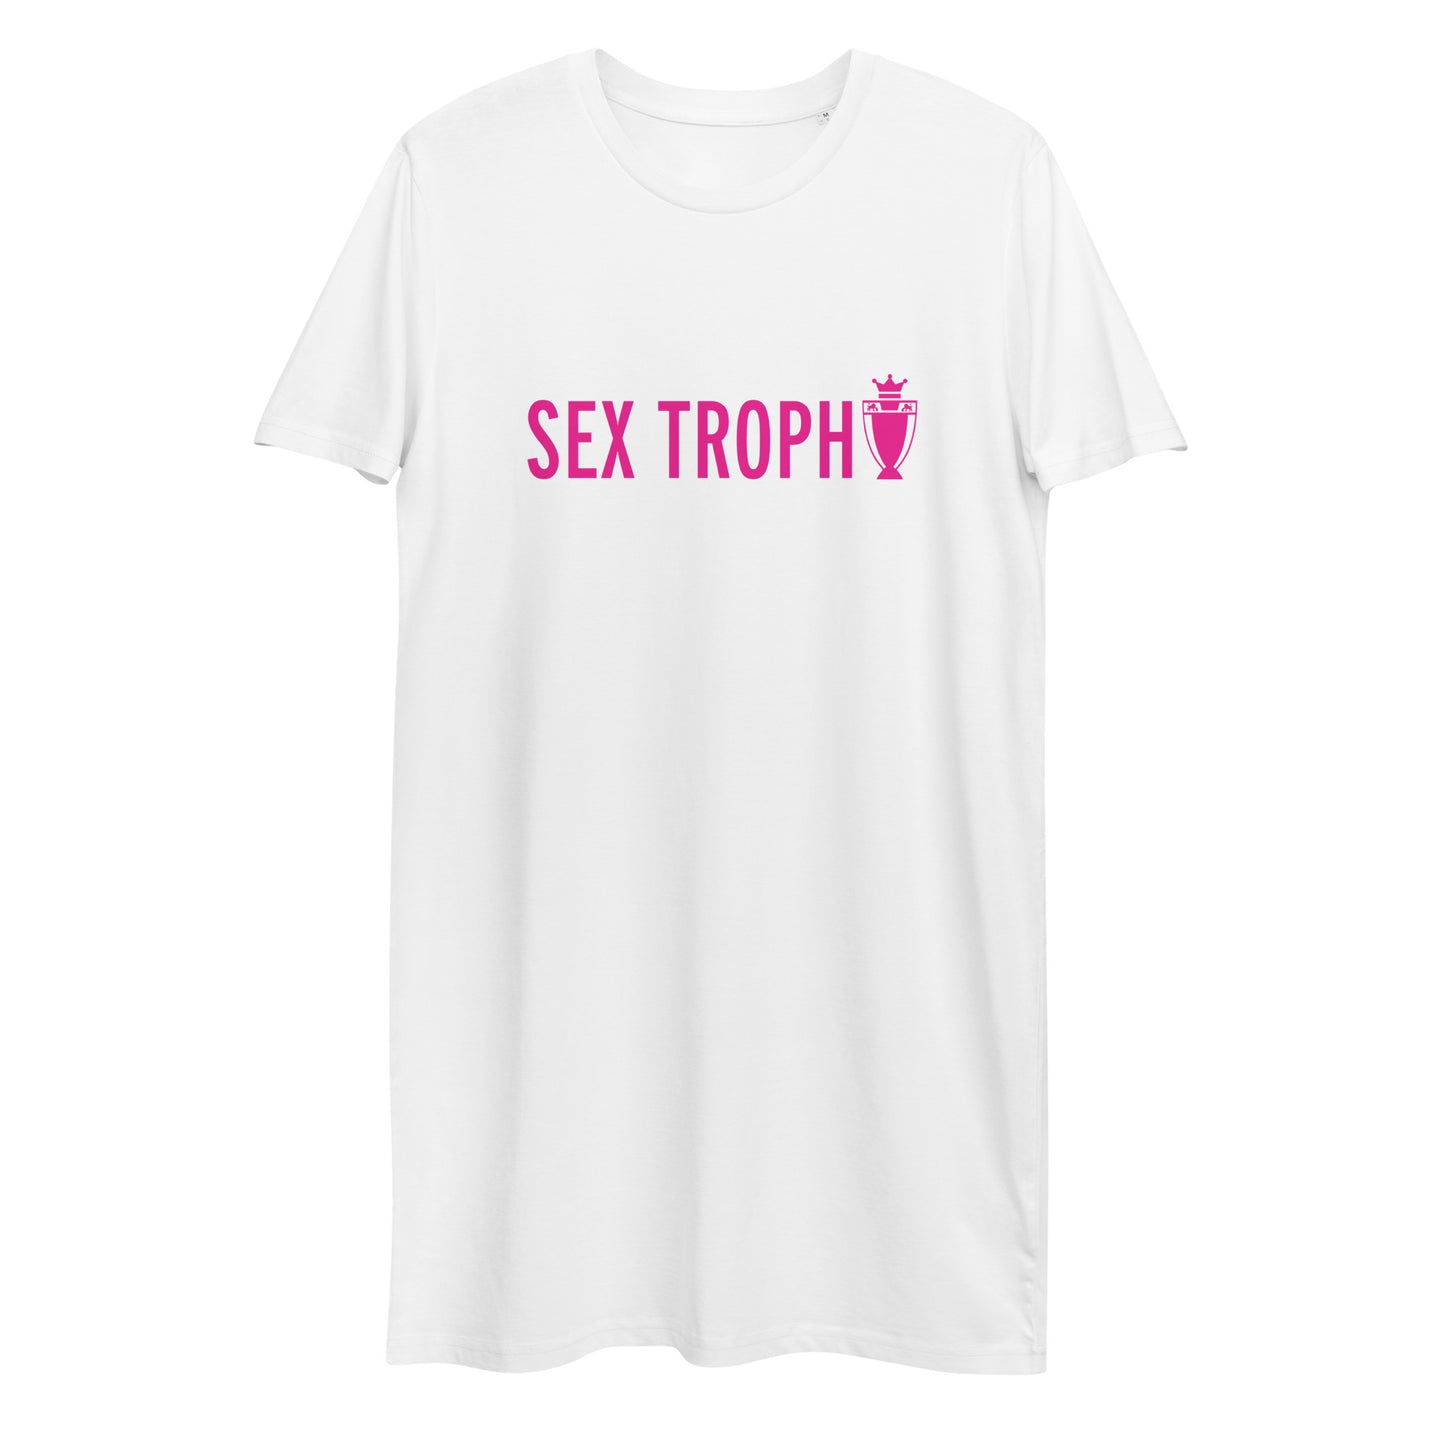 Sex Trophy Organic cotton t-shirt dress